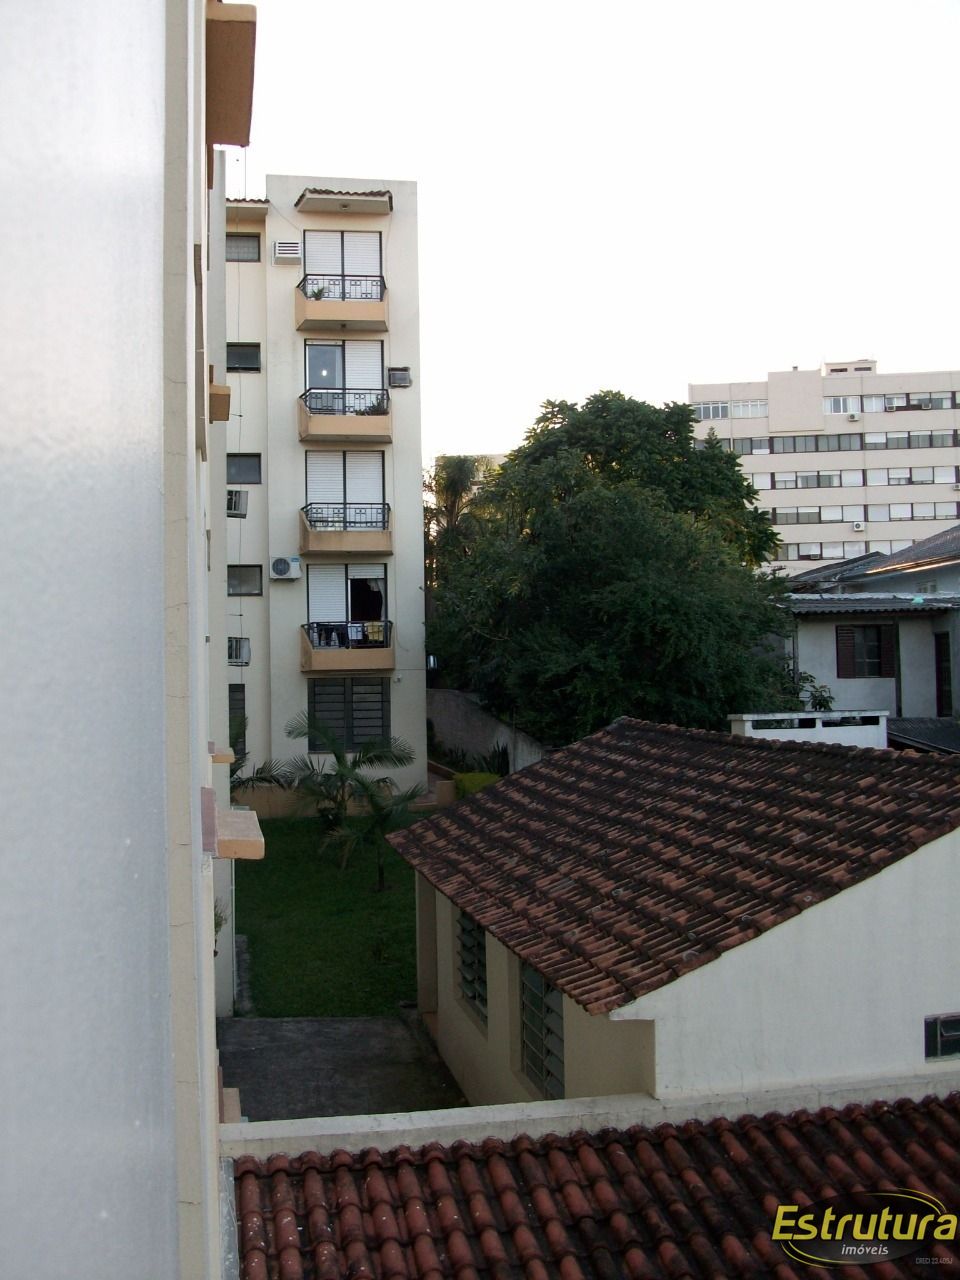 Apartamento com 3 Dormitórios à venda, 110 m² por R$ 437.000,00